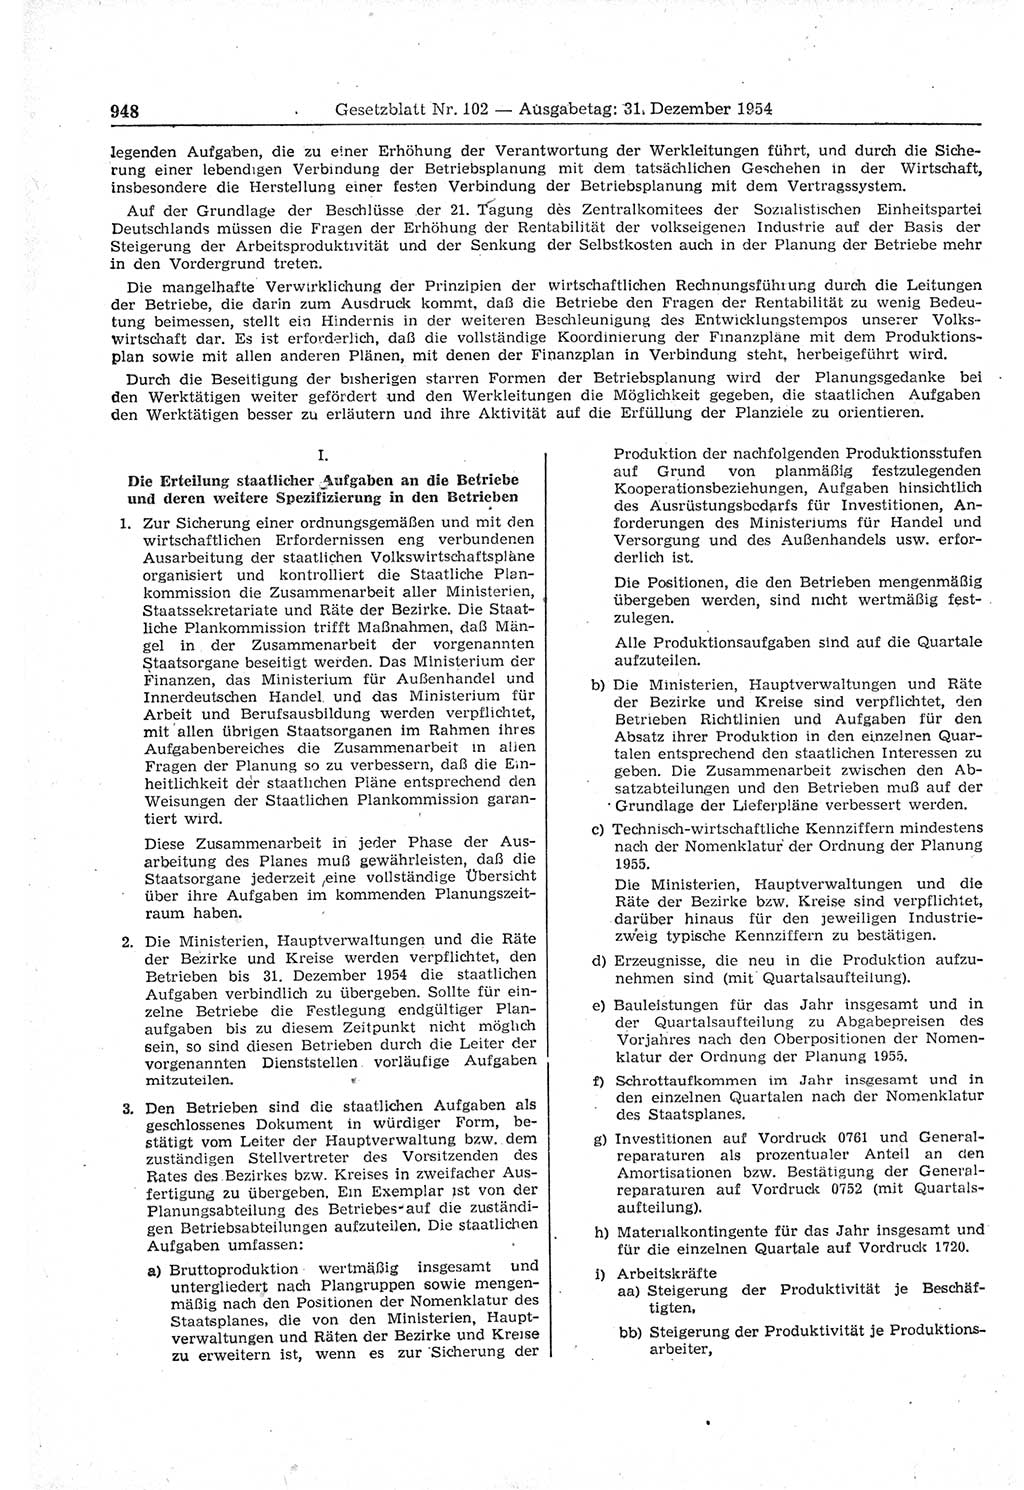 Gesetzblatt (GBl.) der Deutschen Demokratischen Republik (DDR) 1954, Seite 948 (GBl. DDR 1954, S. 948)